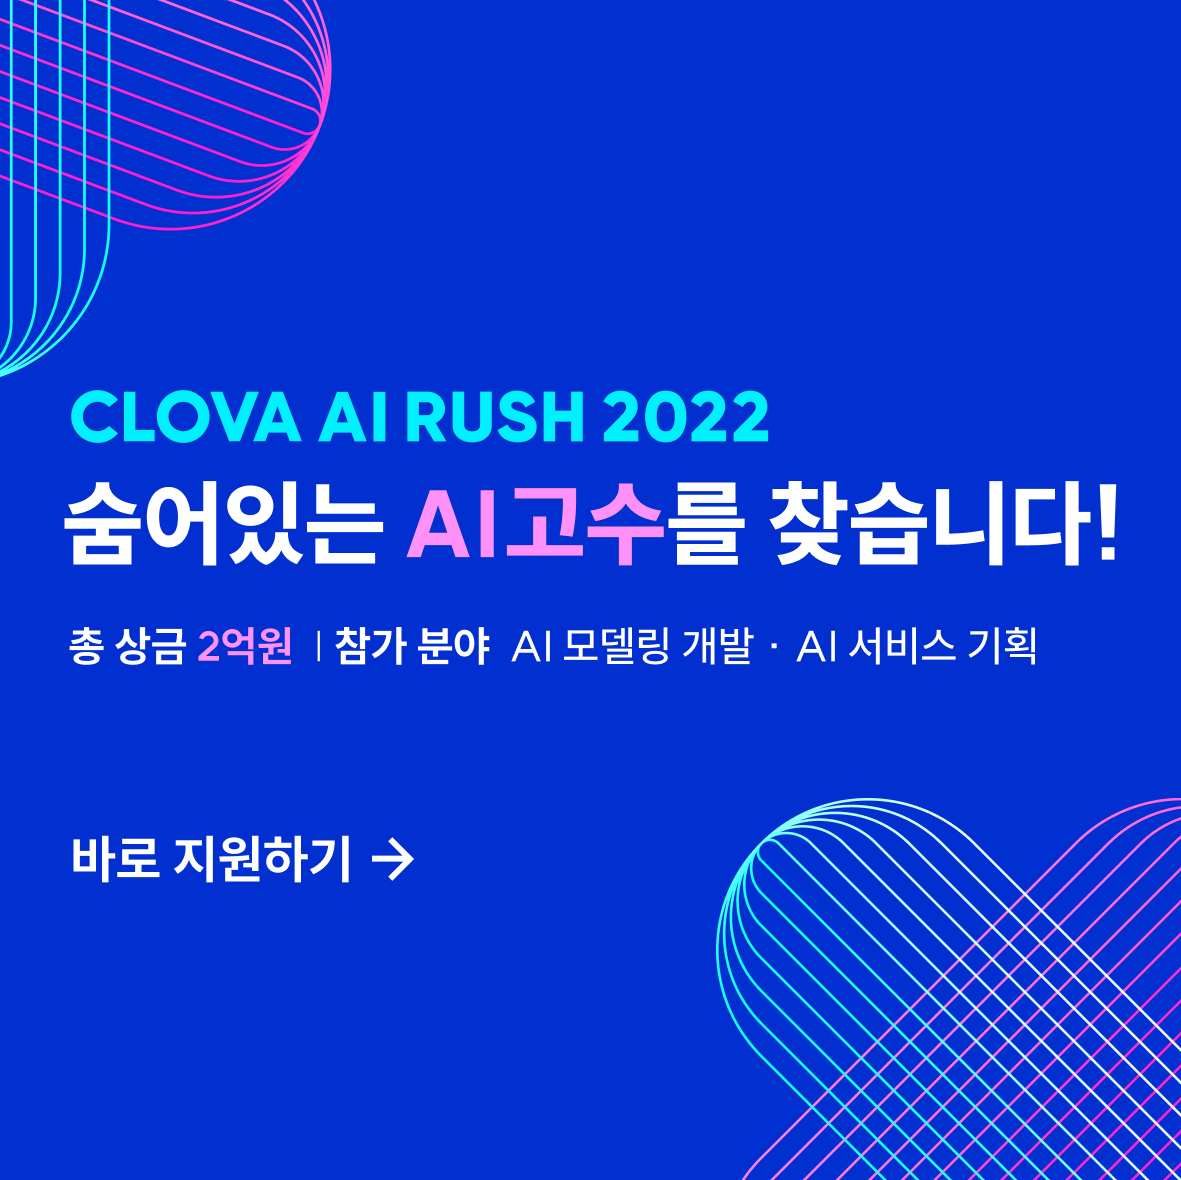 네이버 CLOVA AI RUSH 2022 챌린지(개발/기획 분야) 참가 접수